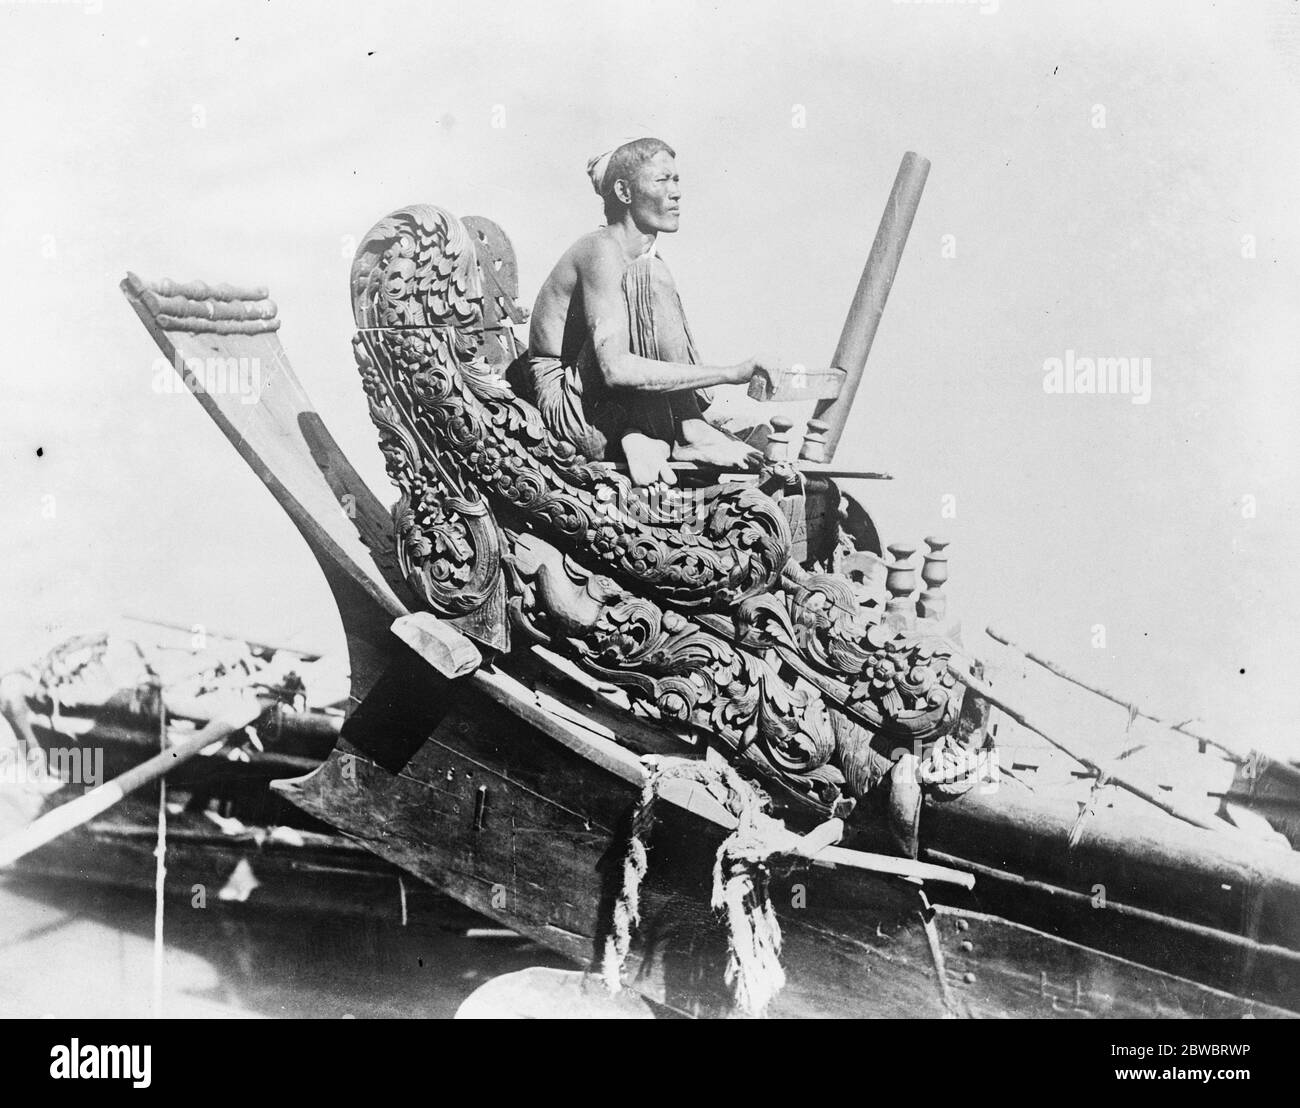 La cox d'une reine a réalisé une photo intéressante de Birmanie , montrant le steersman d'un bateau dans son siège magnifiquement sculpté 27 janvier 1926 Banque D'Images